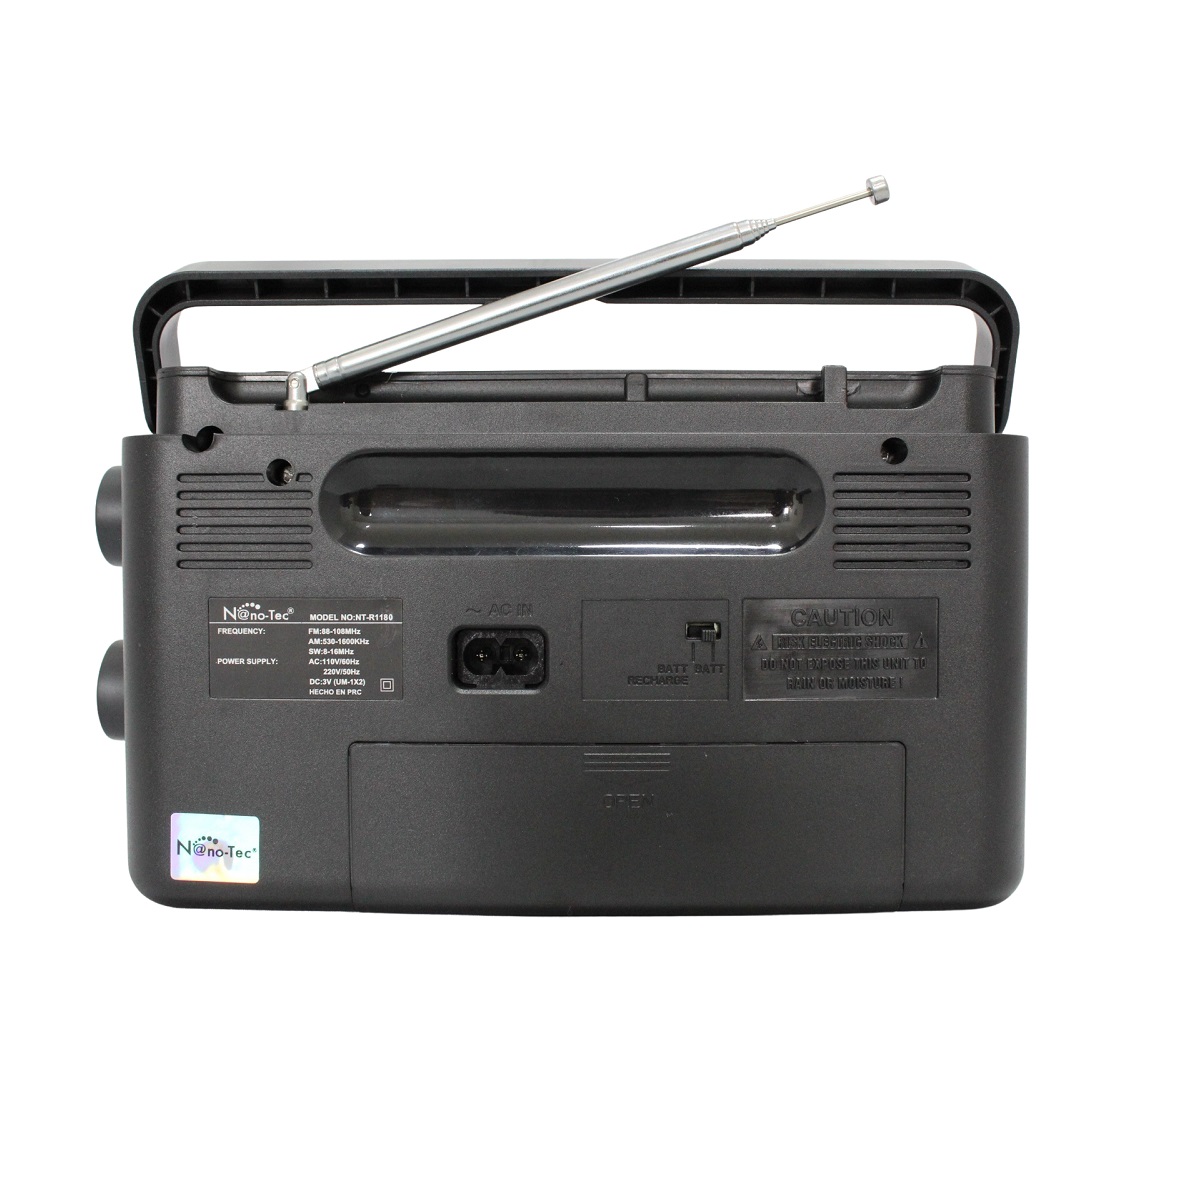 Casa Kuo Ping - La radio portátil JVC RD-N327 es completa, compacta y  ofrece diversas opciones para tu entretenimiento 😋 Cuenta con entrada USB,  posee radio FM, Bluetooth, CD Player y demás